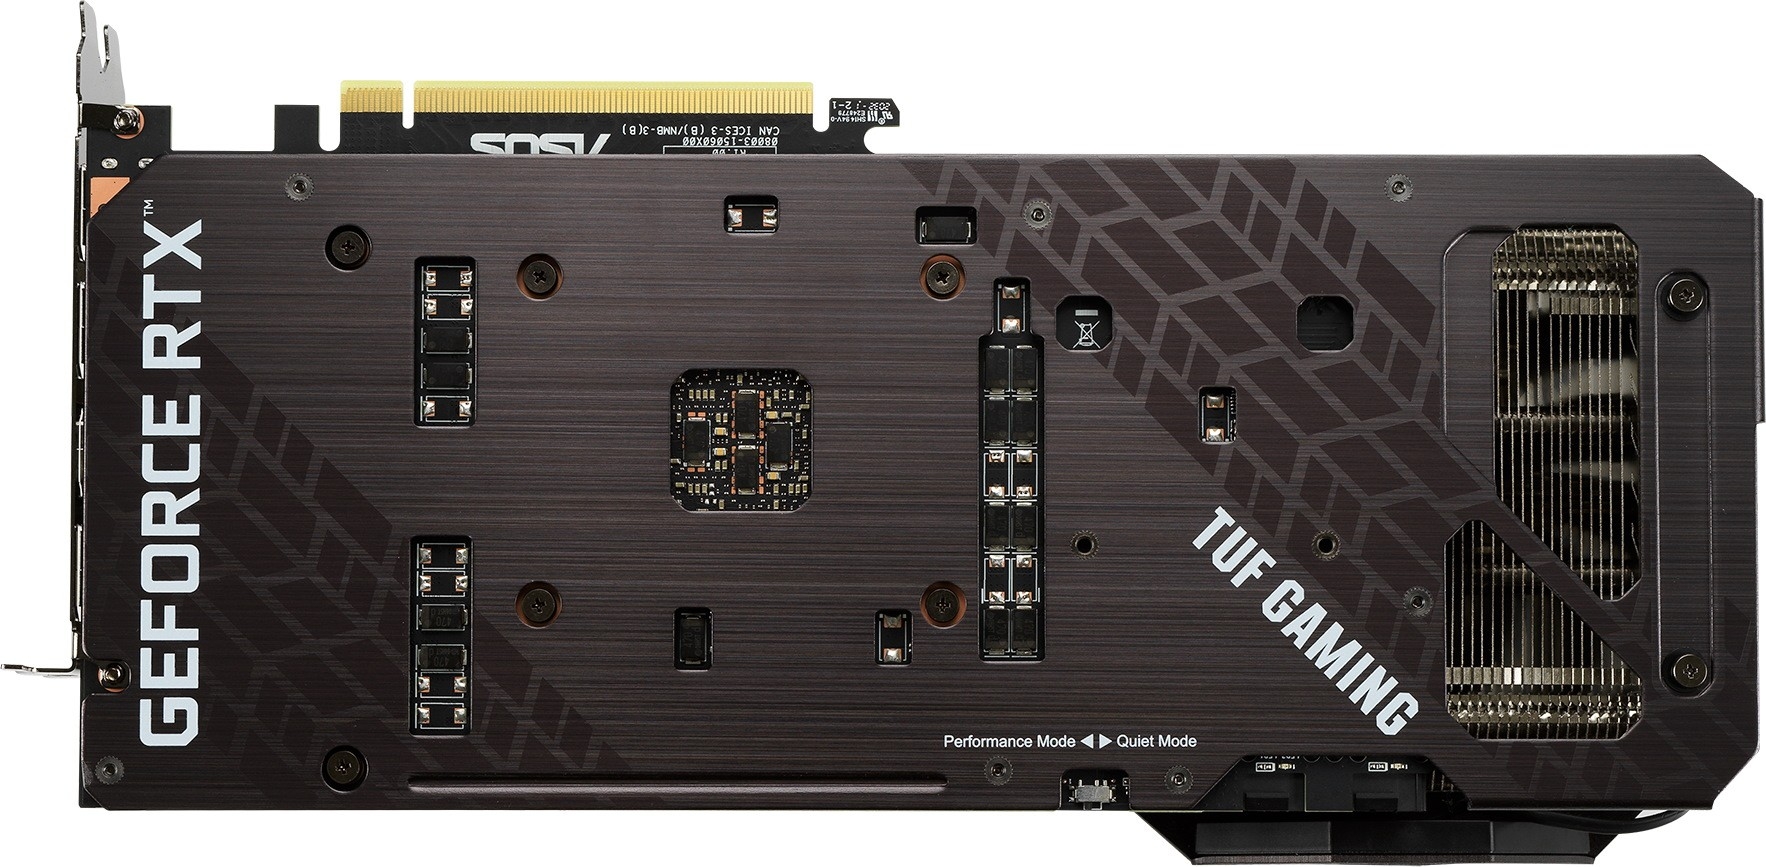 ASUS TUF Gaming GeForce RTX 3070 1815MHz PCI-E 4.0 8192MB 14000MHz 256 bit 2xHDMI 3xDisplayPort HDCP TUF-RTX3070-O8G-GAMING